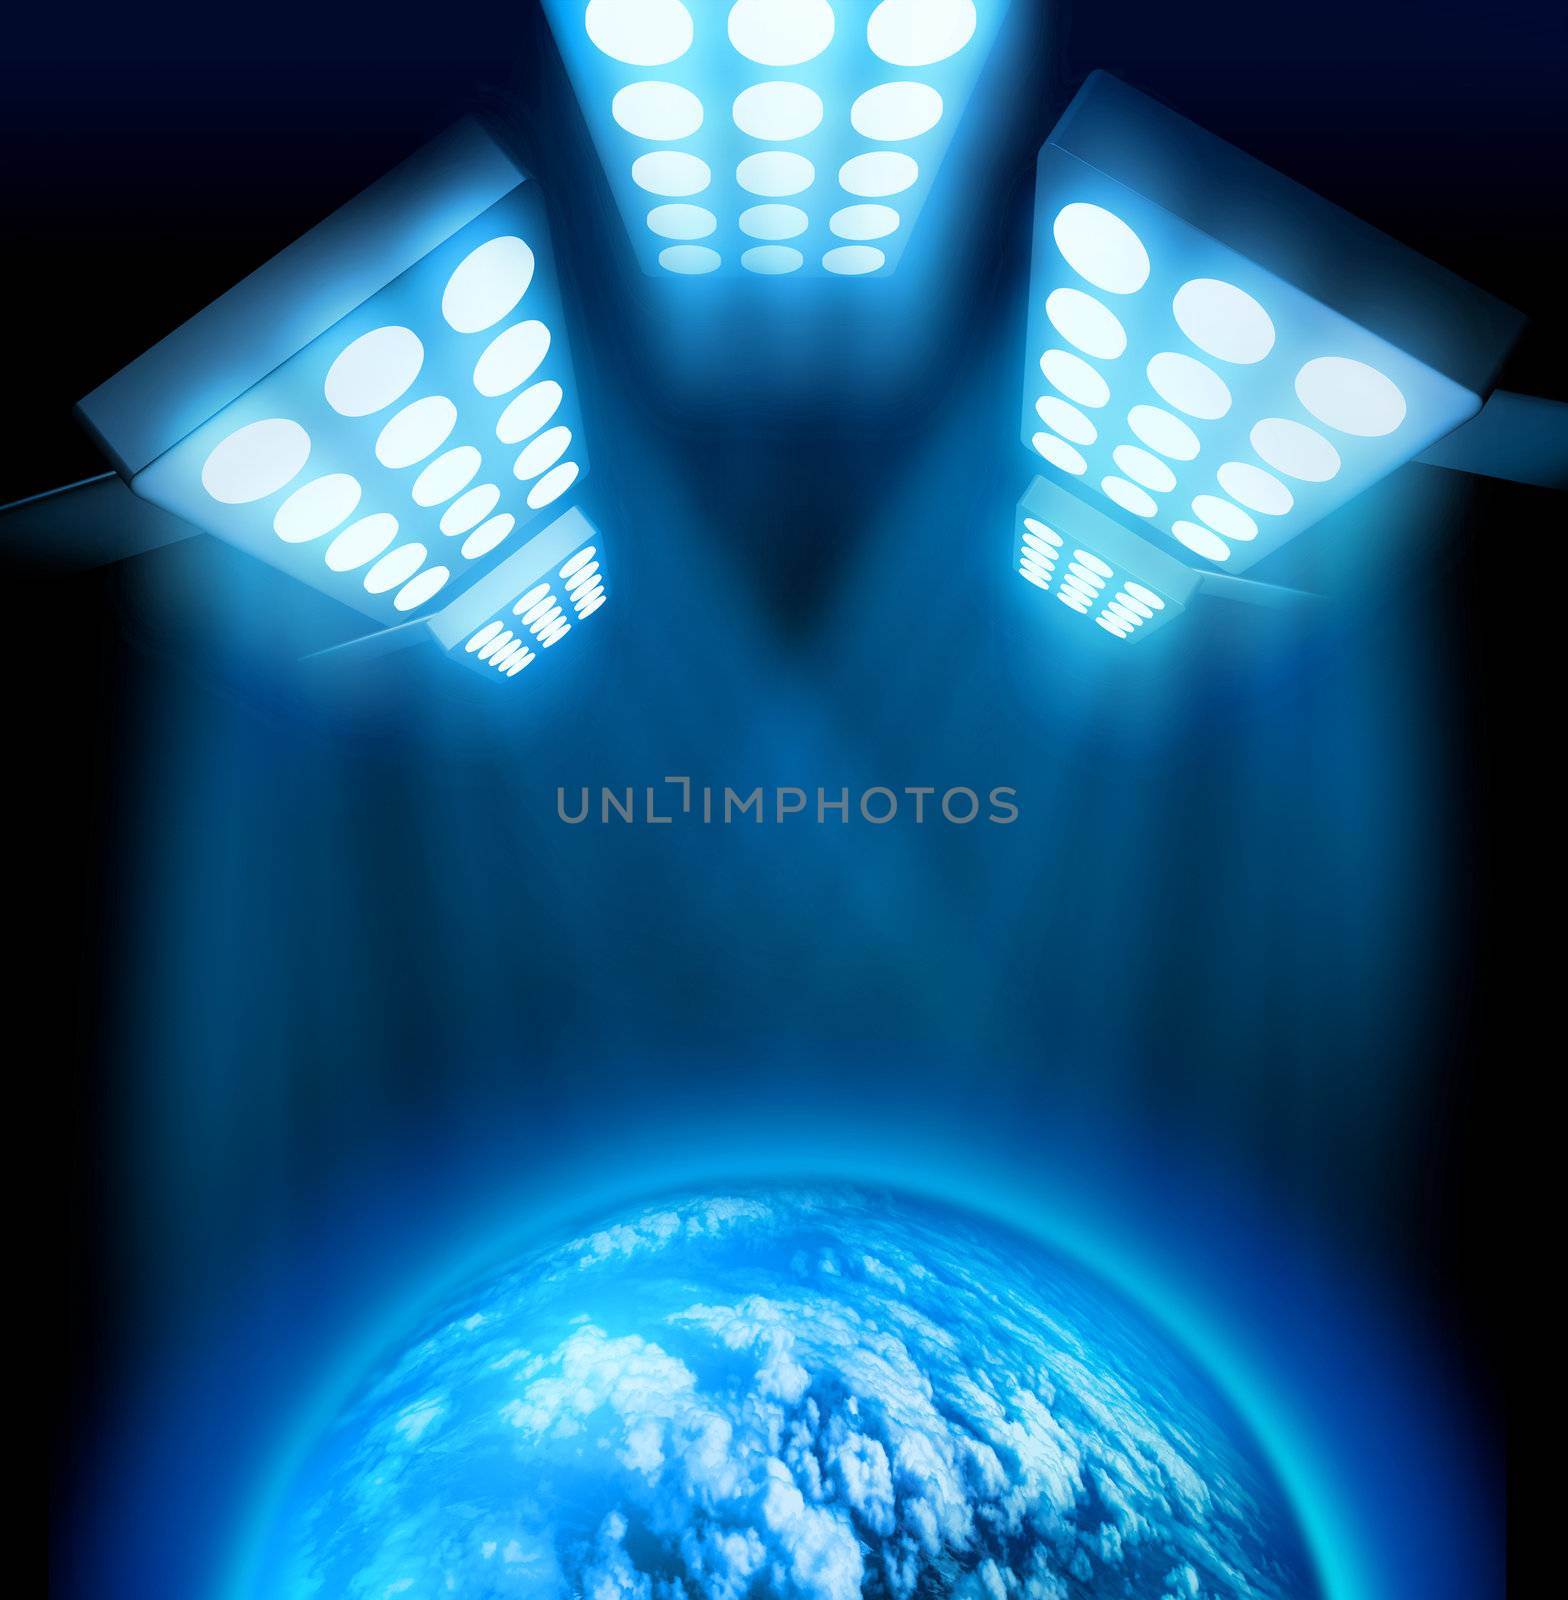 World premiere light show by anterovium